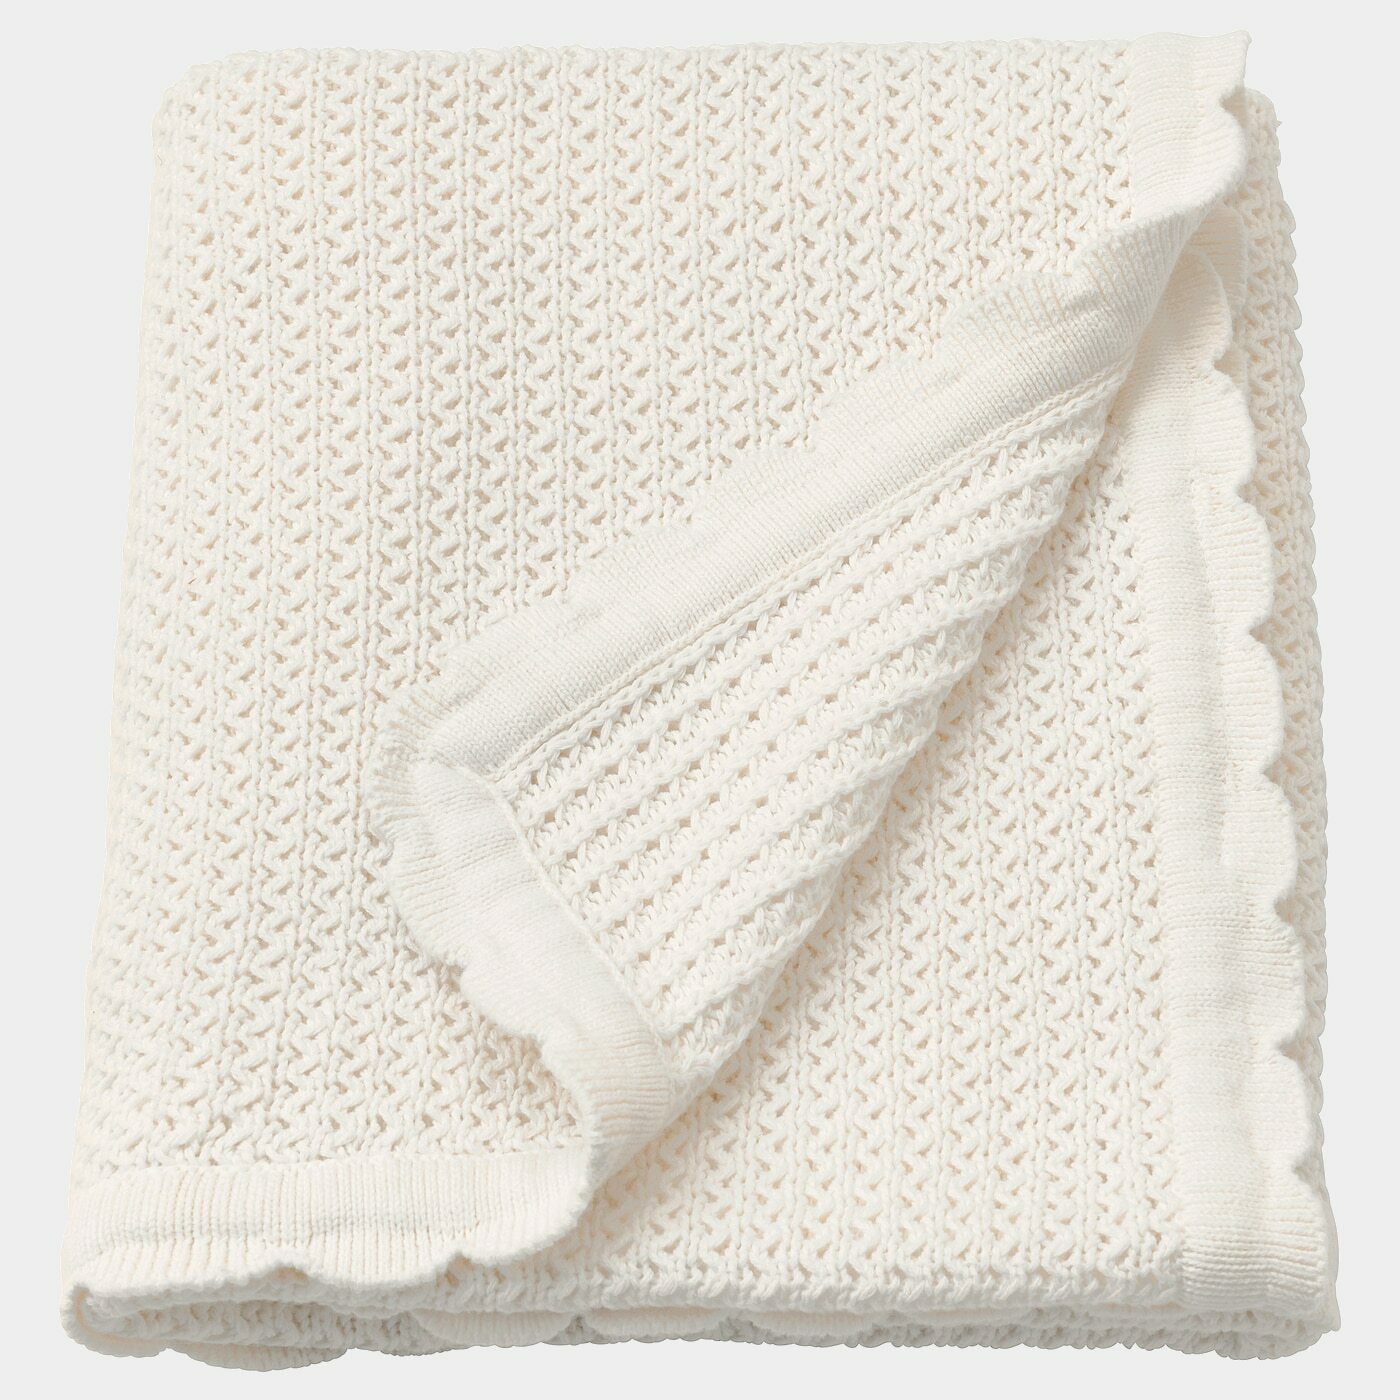 GULSPARV Babydecke  - Babydecken - Textilien Ideen für dein Zuhause von Home Trends. Textilien Trends von Social Media Influencer für dein Skandi Zuhause.